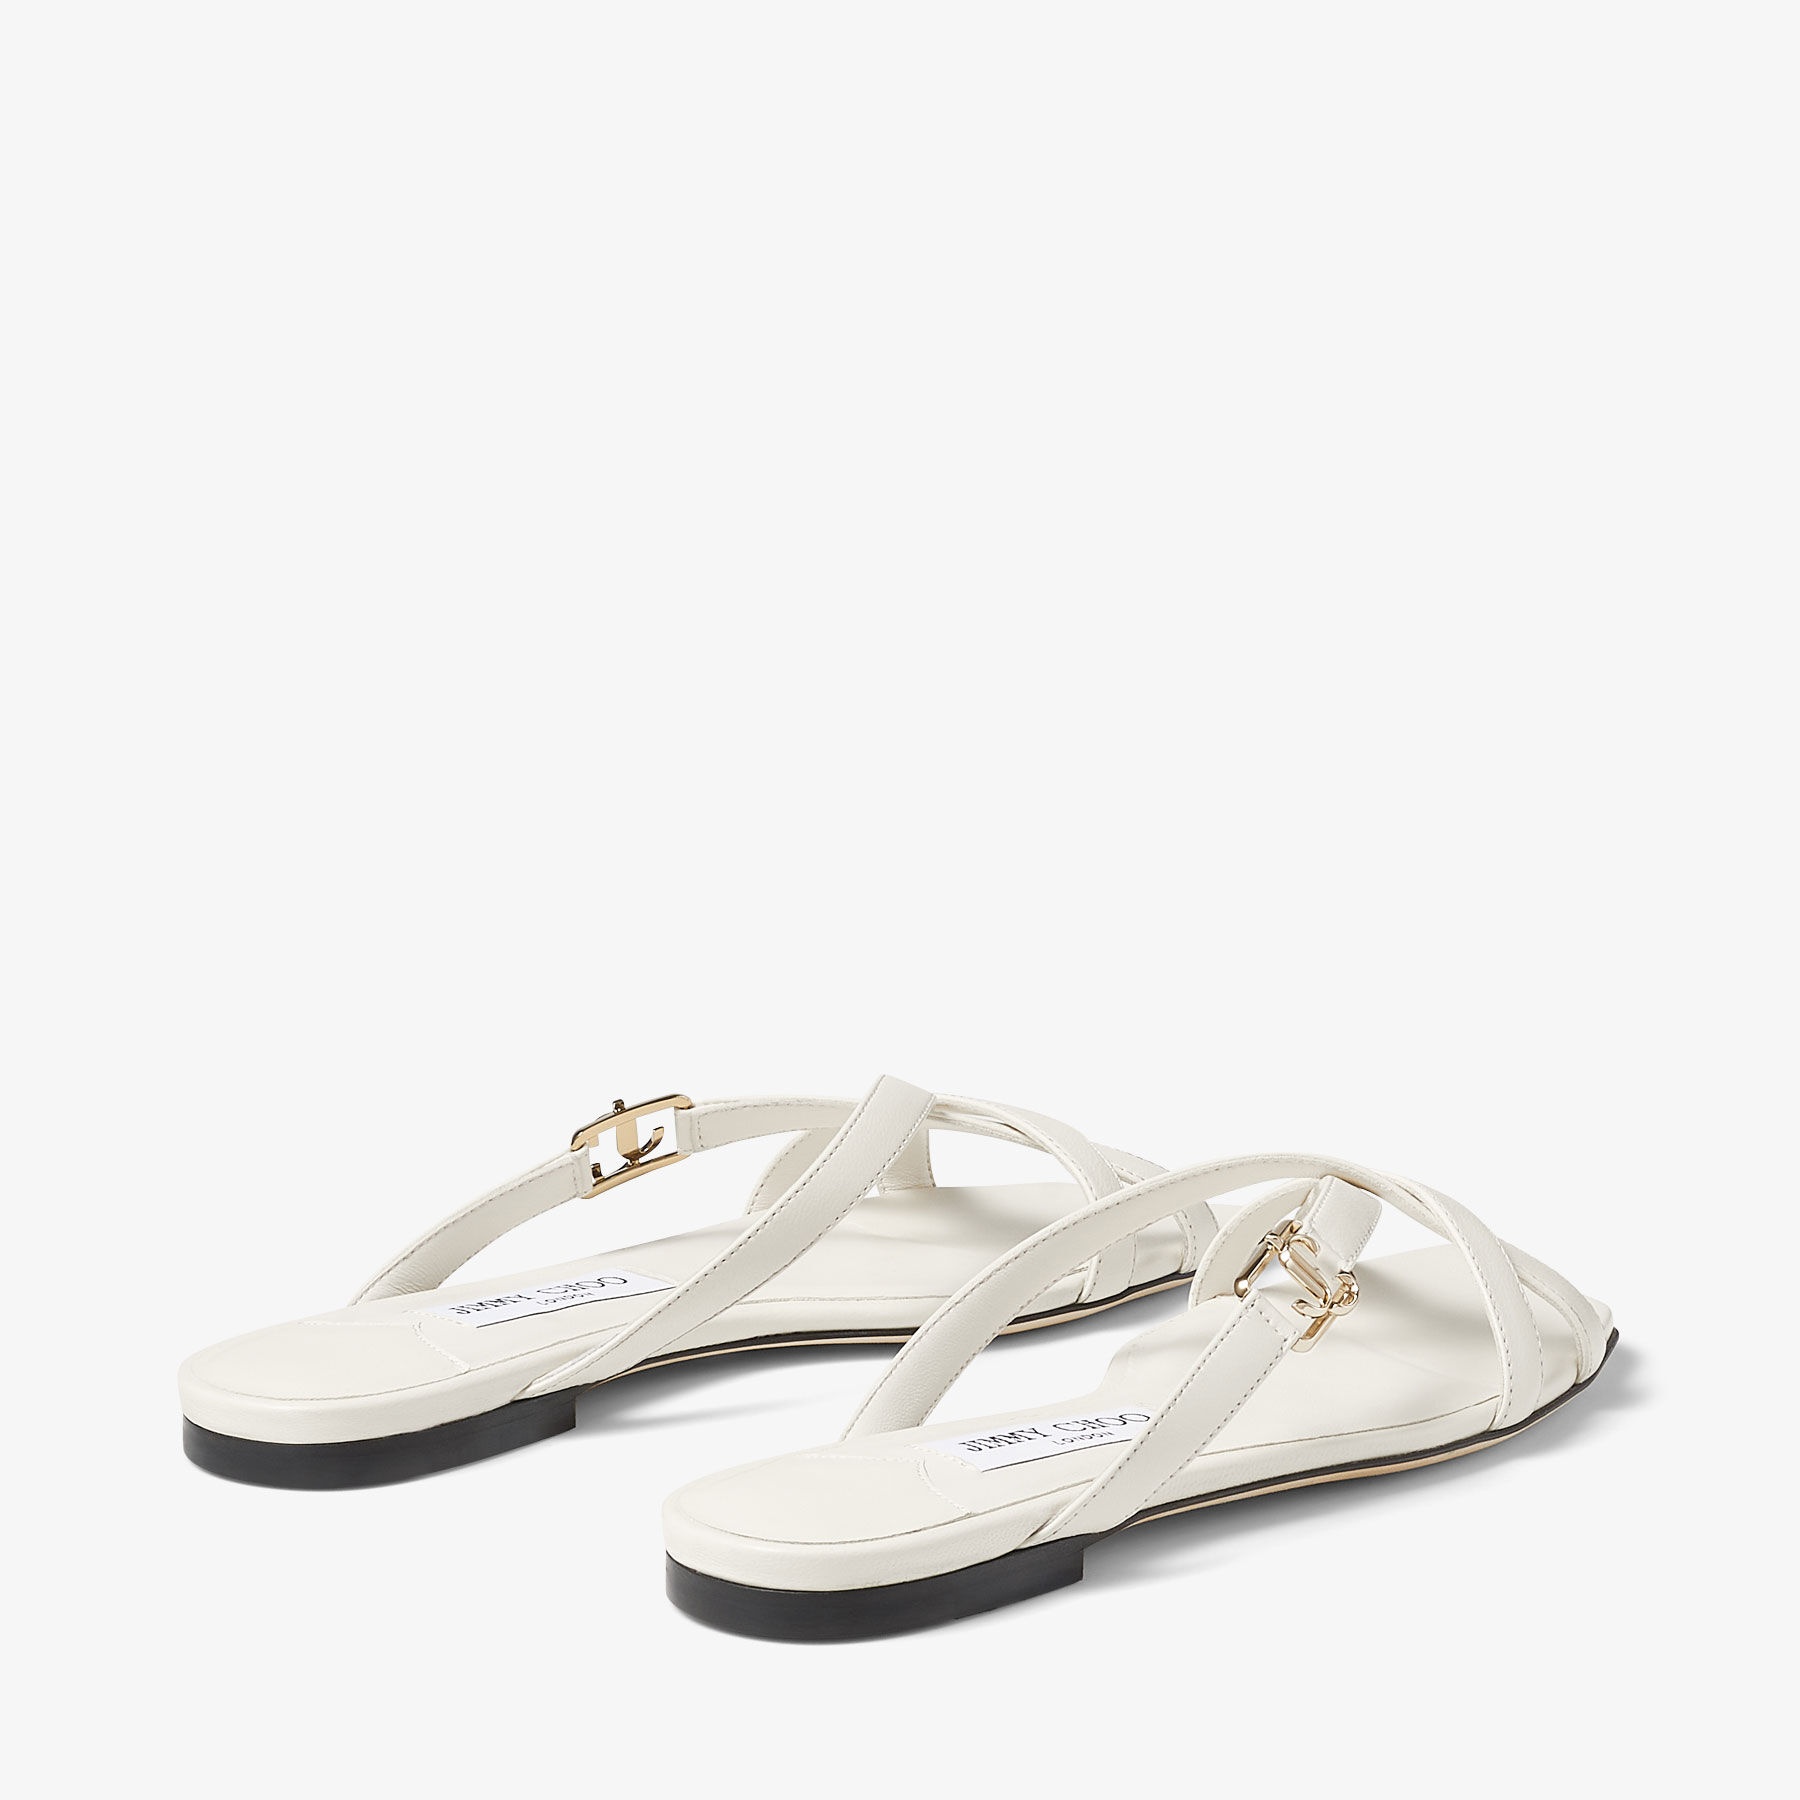 Jess Flat
Latte Nappa Leather Flat Sandals - 5